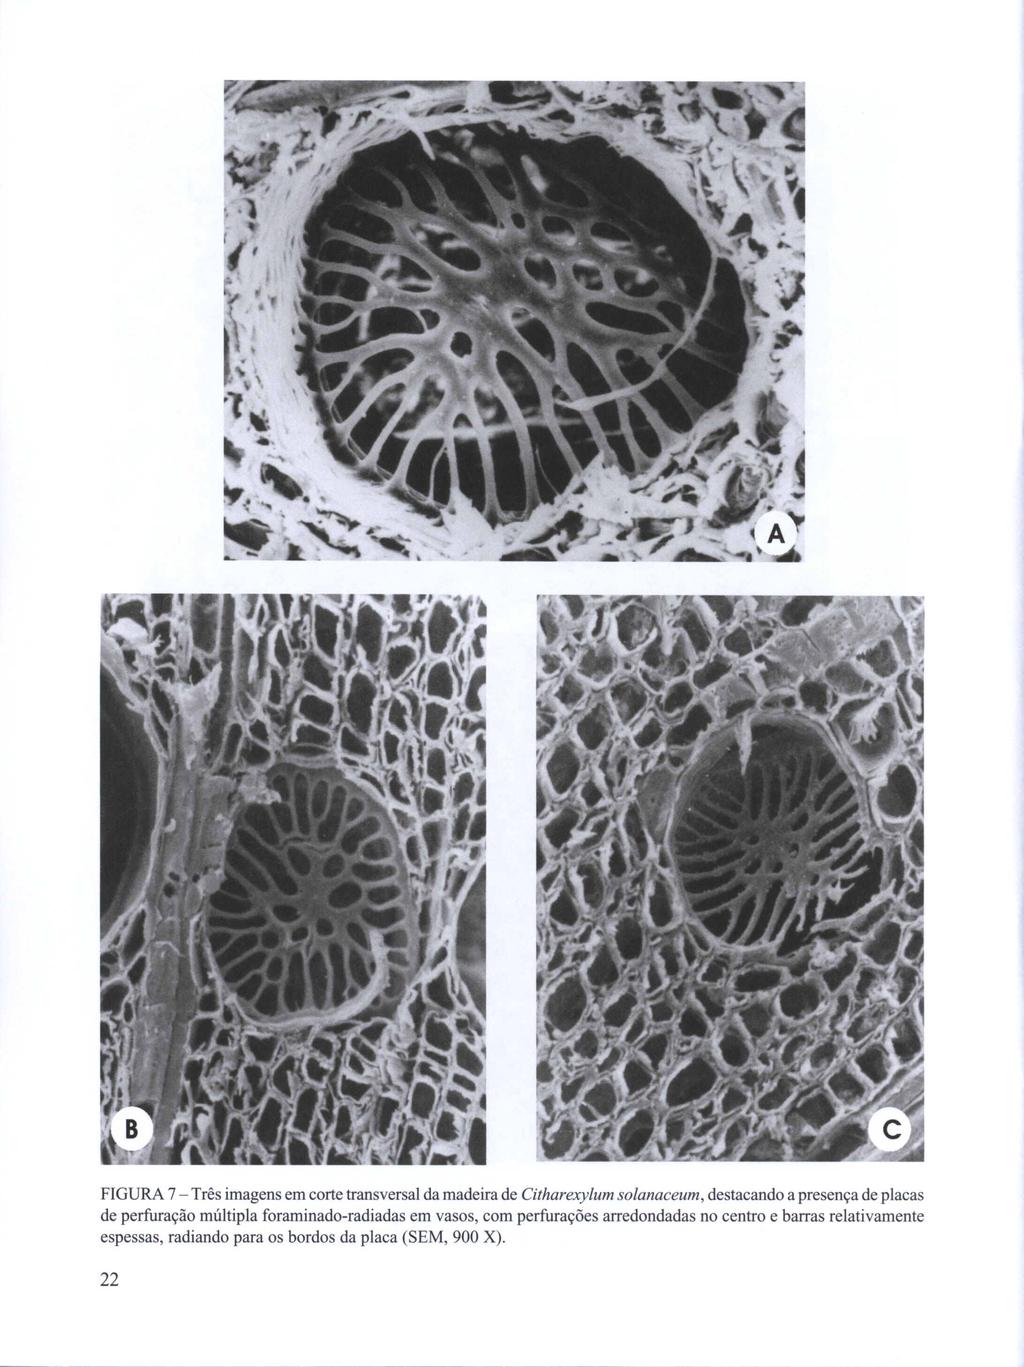 FIGURA 7 - Três imagens em corte transversal da madeira de Citharexylum solanaceum, destacando a presença de placas de perfuração múltipla